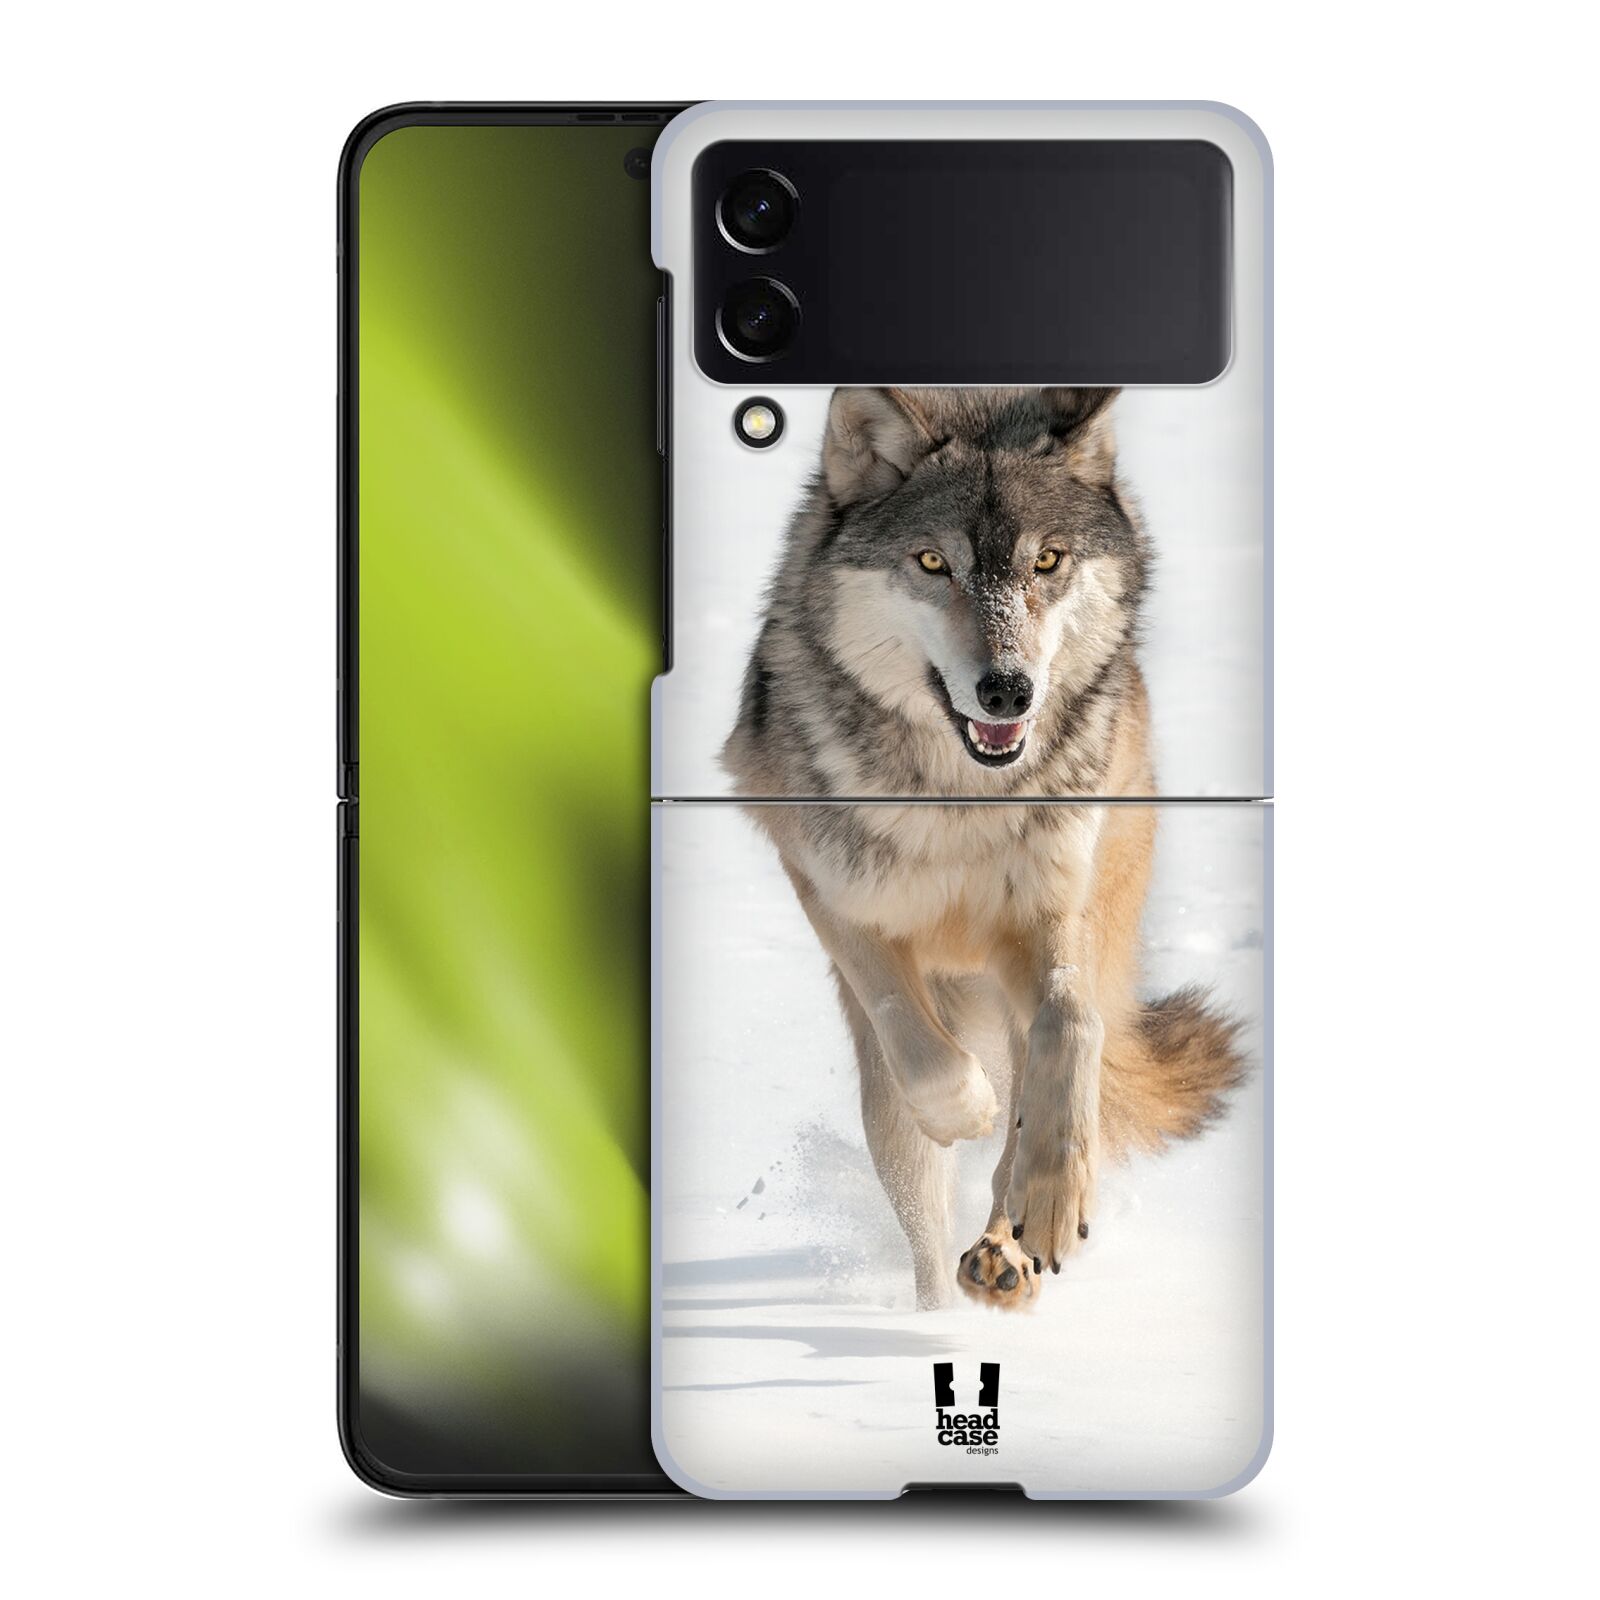 Plastový obal HEAD CASE na mobil Samsung Galaxy Z Flip 4 vzor Divočina, Divoký život a zvířata foto BĚŽÍCÍ VLK